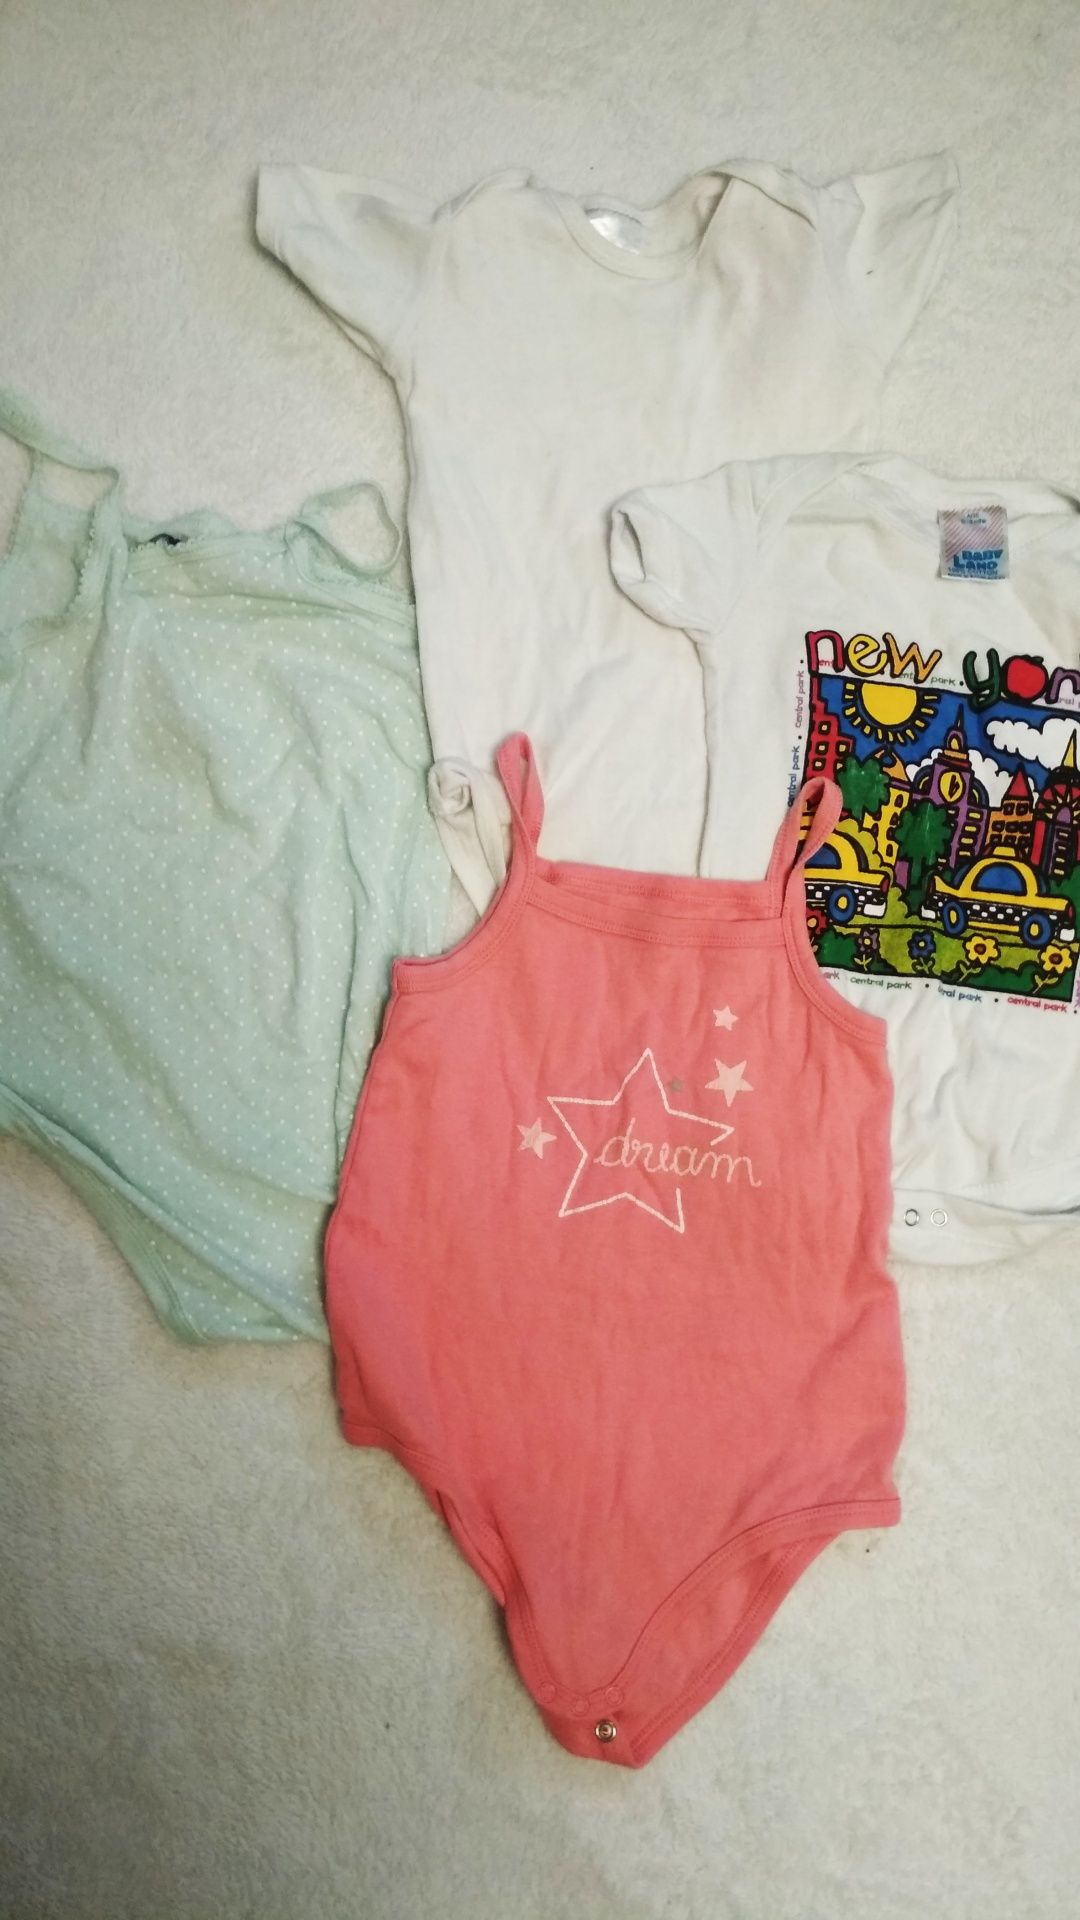 Пакет летних вещей одежды для новорожденных 0- 6 м боди платье песочни